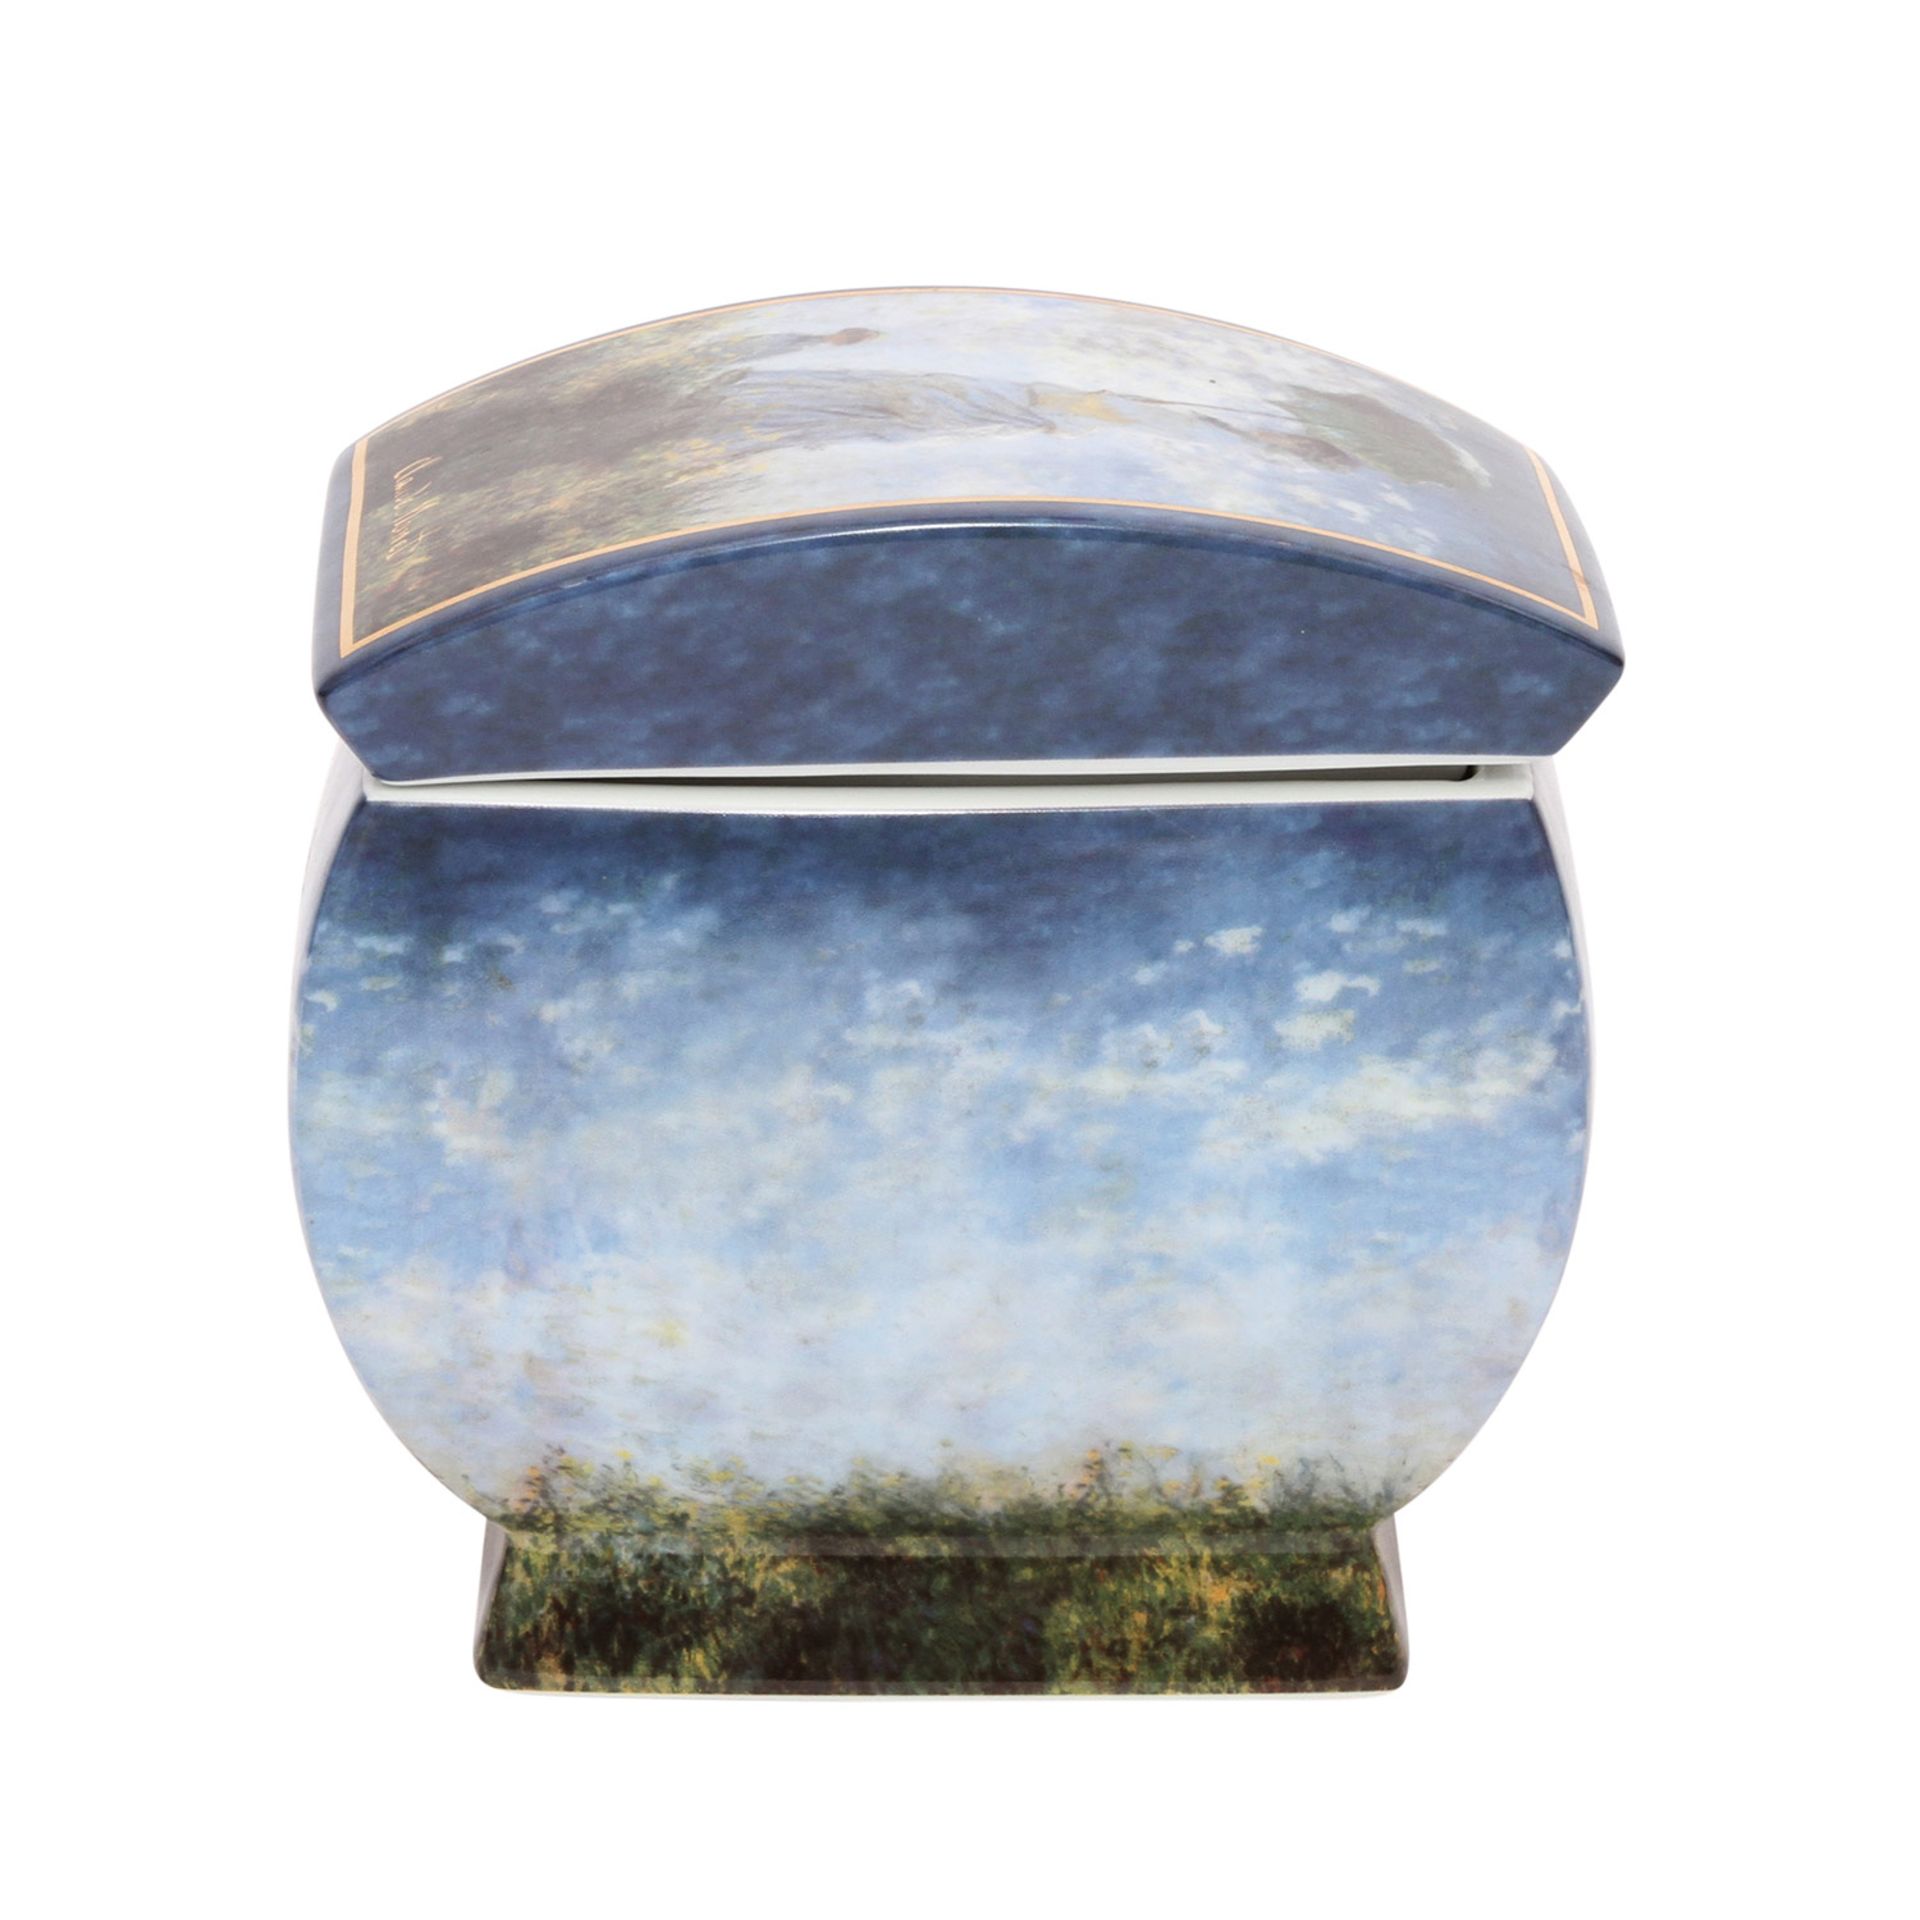 GOEBEL ARTIS ORBIS Deckeldose "Claude Monet", 20. Jh.Rechteckige Form mit flachem Deckel, - Image 2 of 7